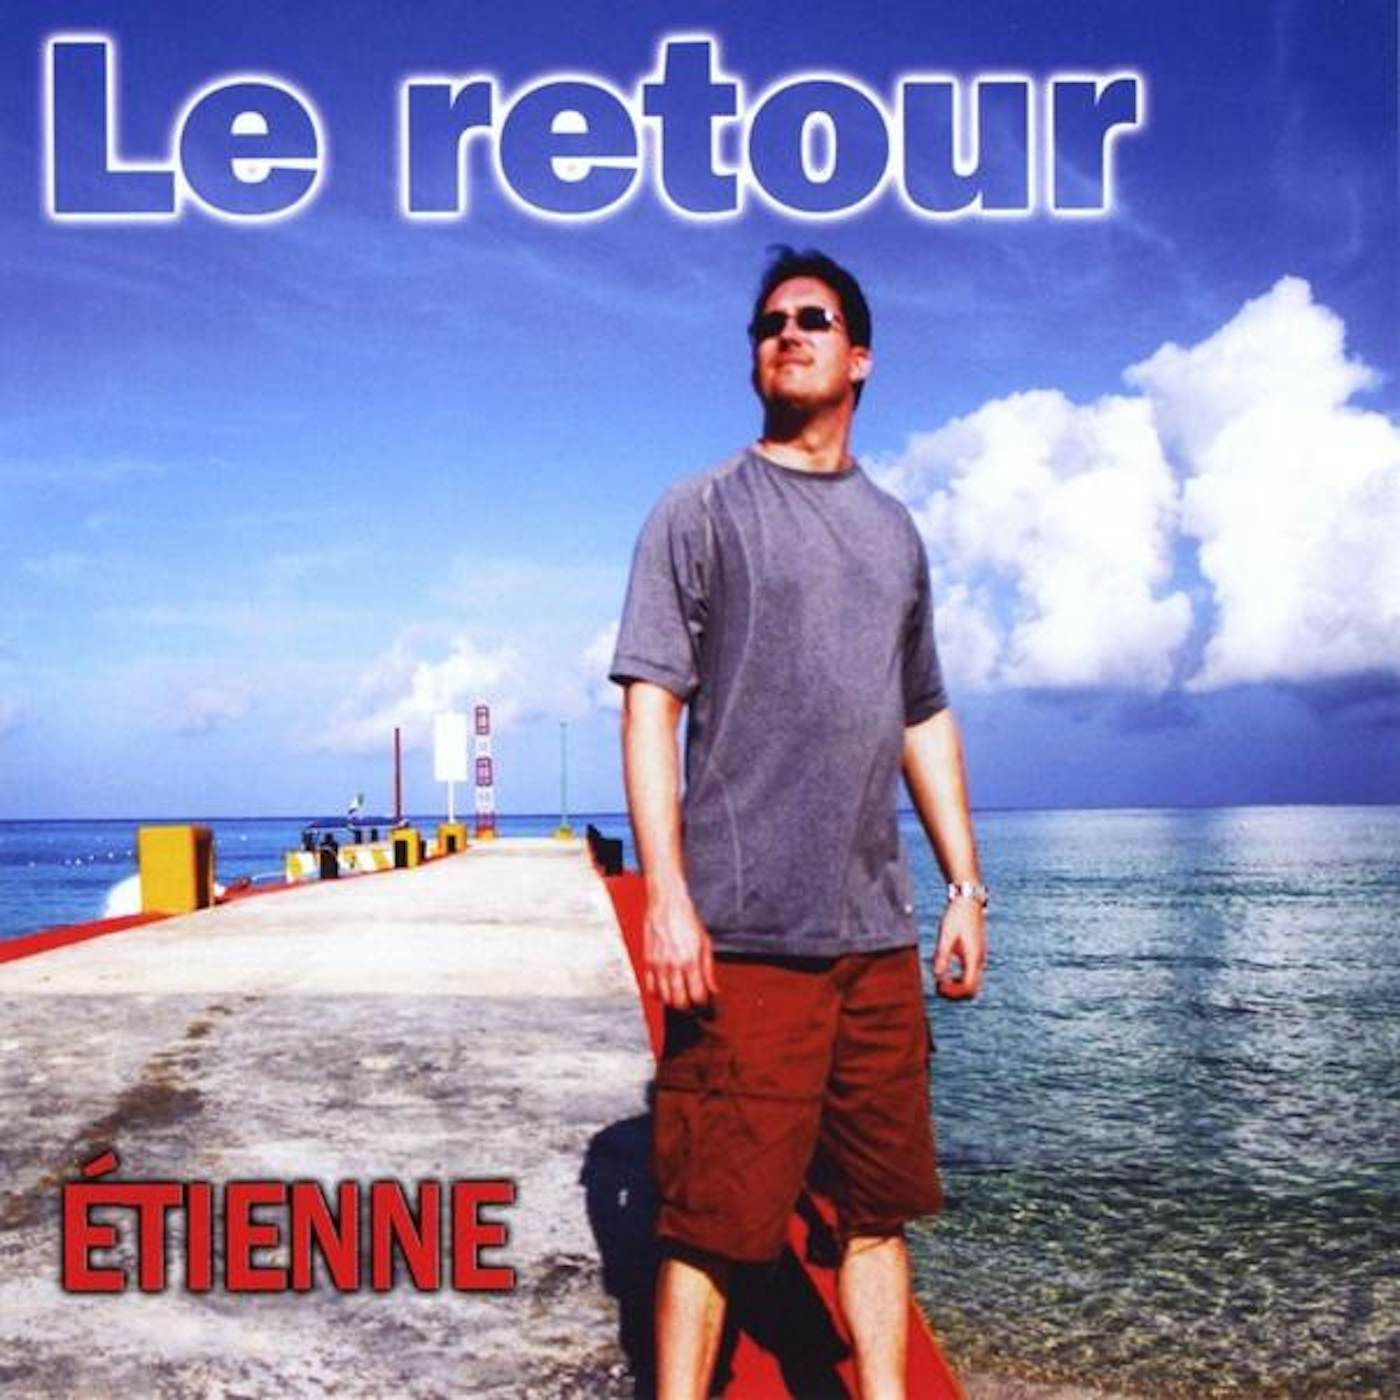 Etienne LE RETOUR CD